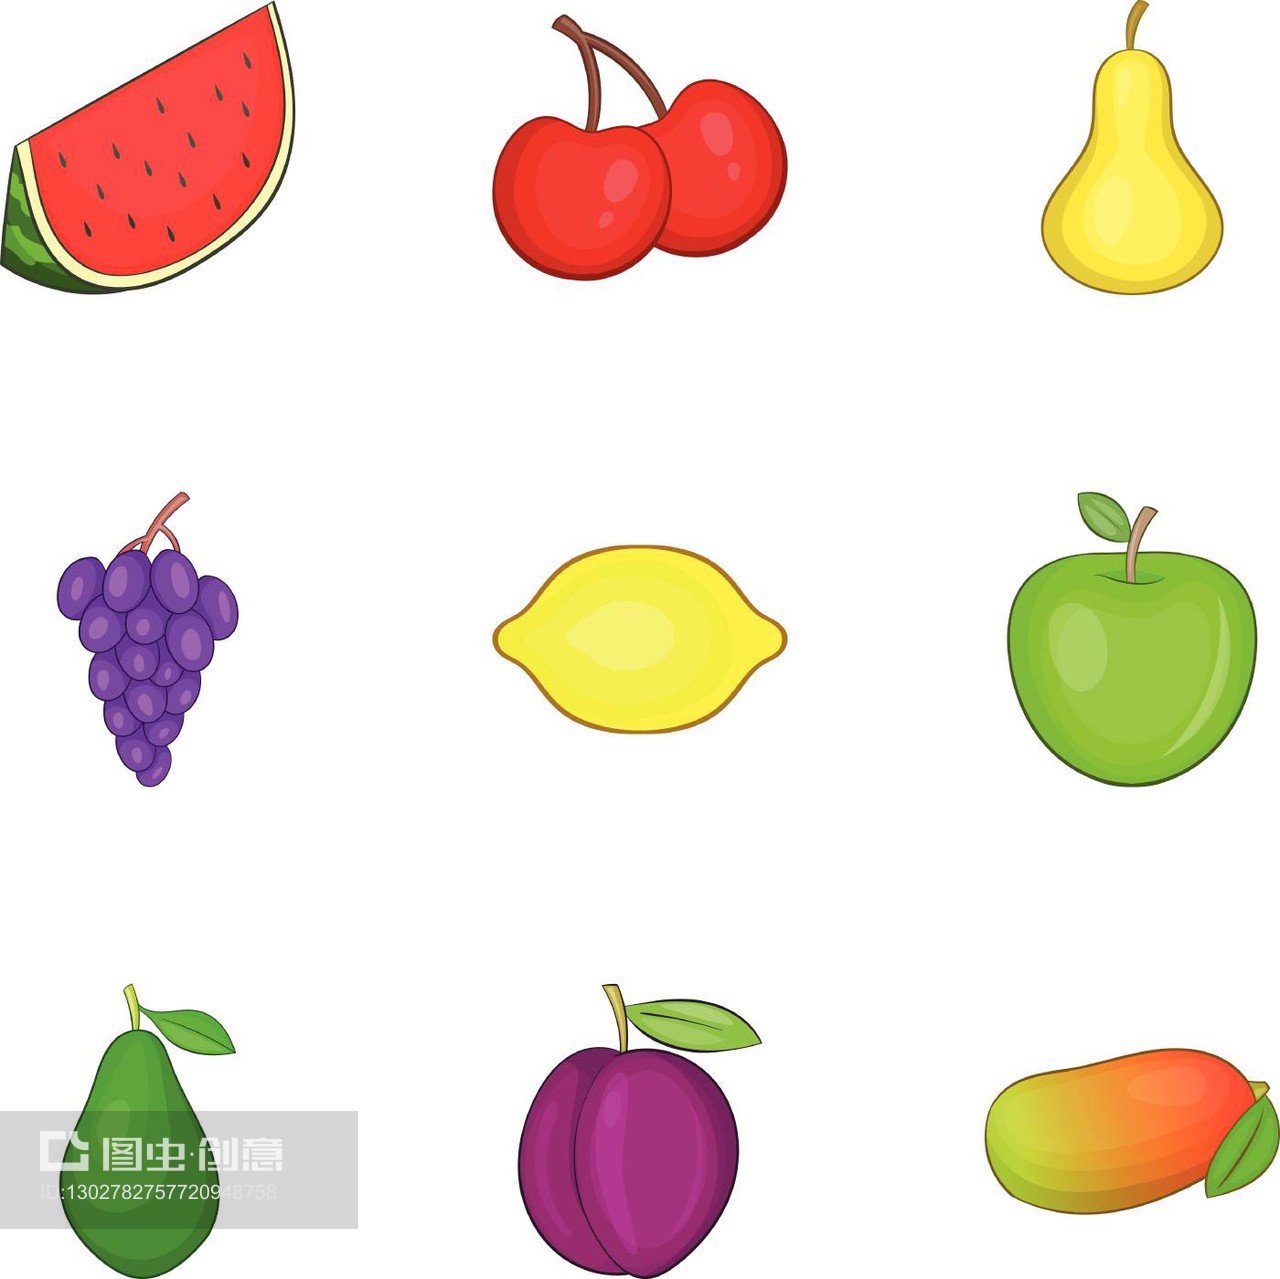 不同种类的水果图标集,卡通风格